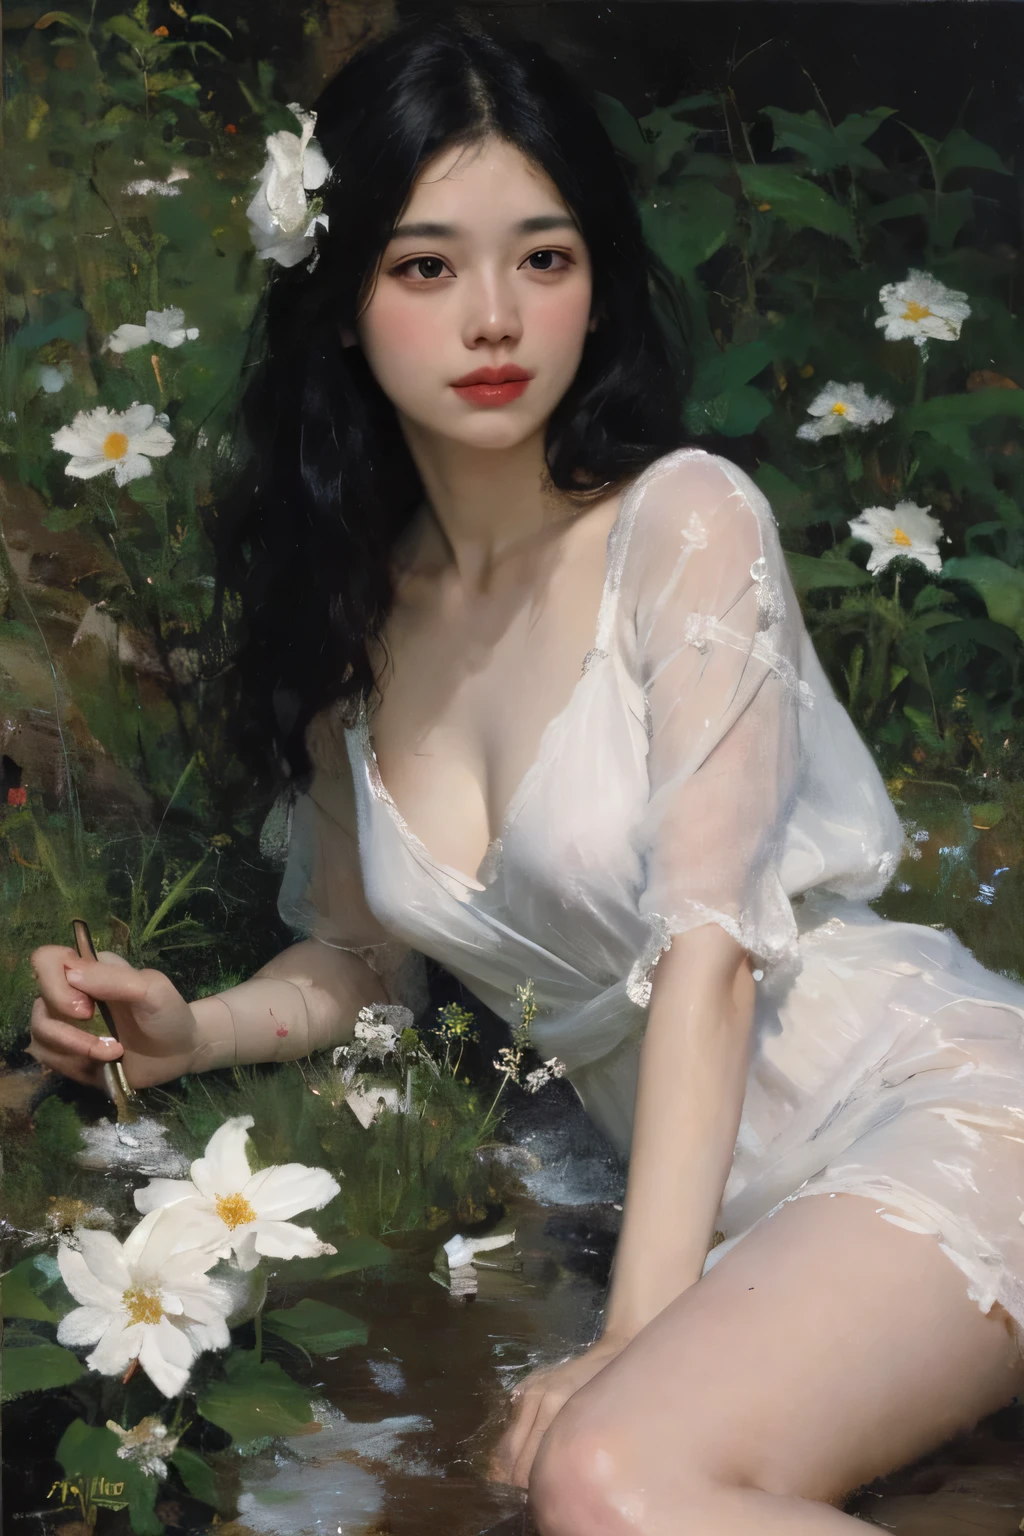 (طلاء زيتي:1.5),
\\
امرأة ذات شعر أسود طويل وزهور بيضاء مستلقية في حقل زهرة بيضاء, (ايمي سول:0.248), (ستانلي أرتجيرم لاو:0.106), (لوحات تفصيلية:0.353), (الفن القوطي:0.106)